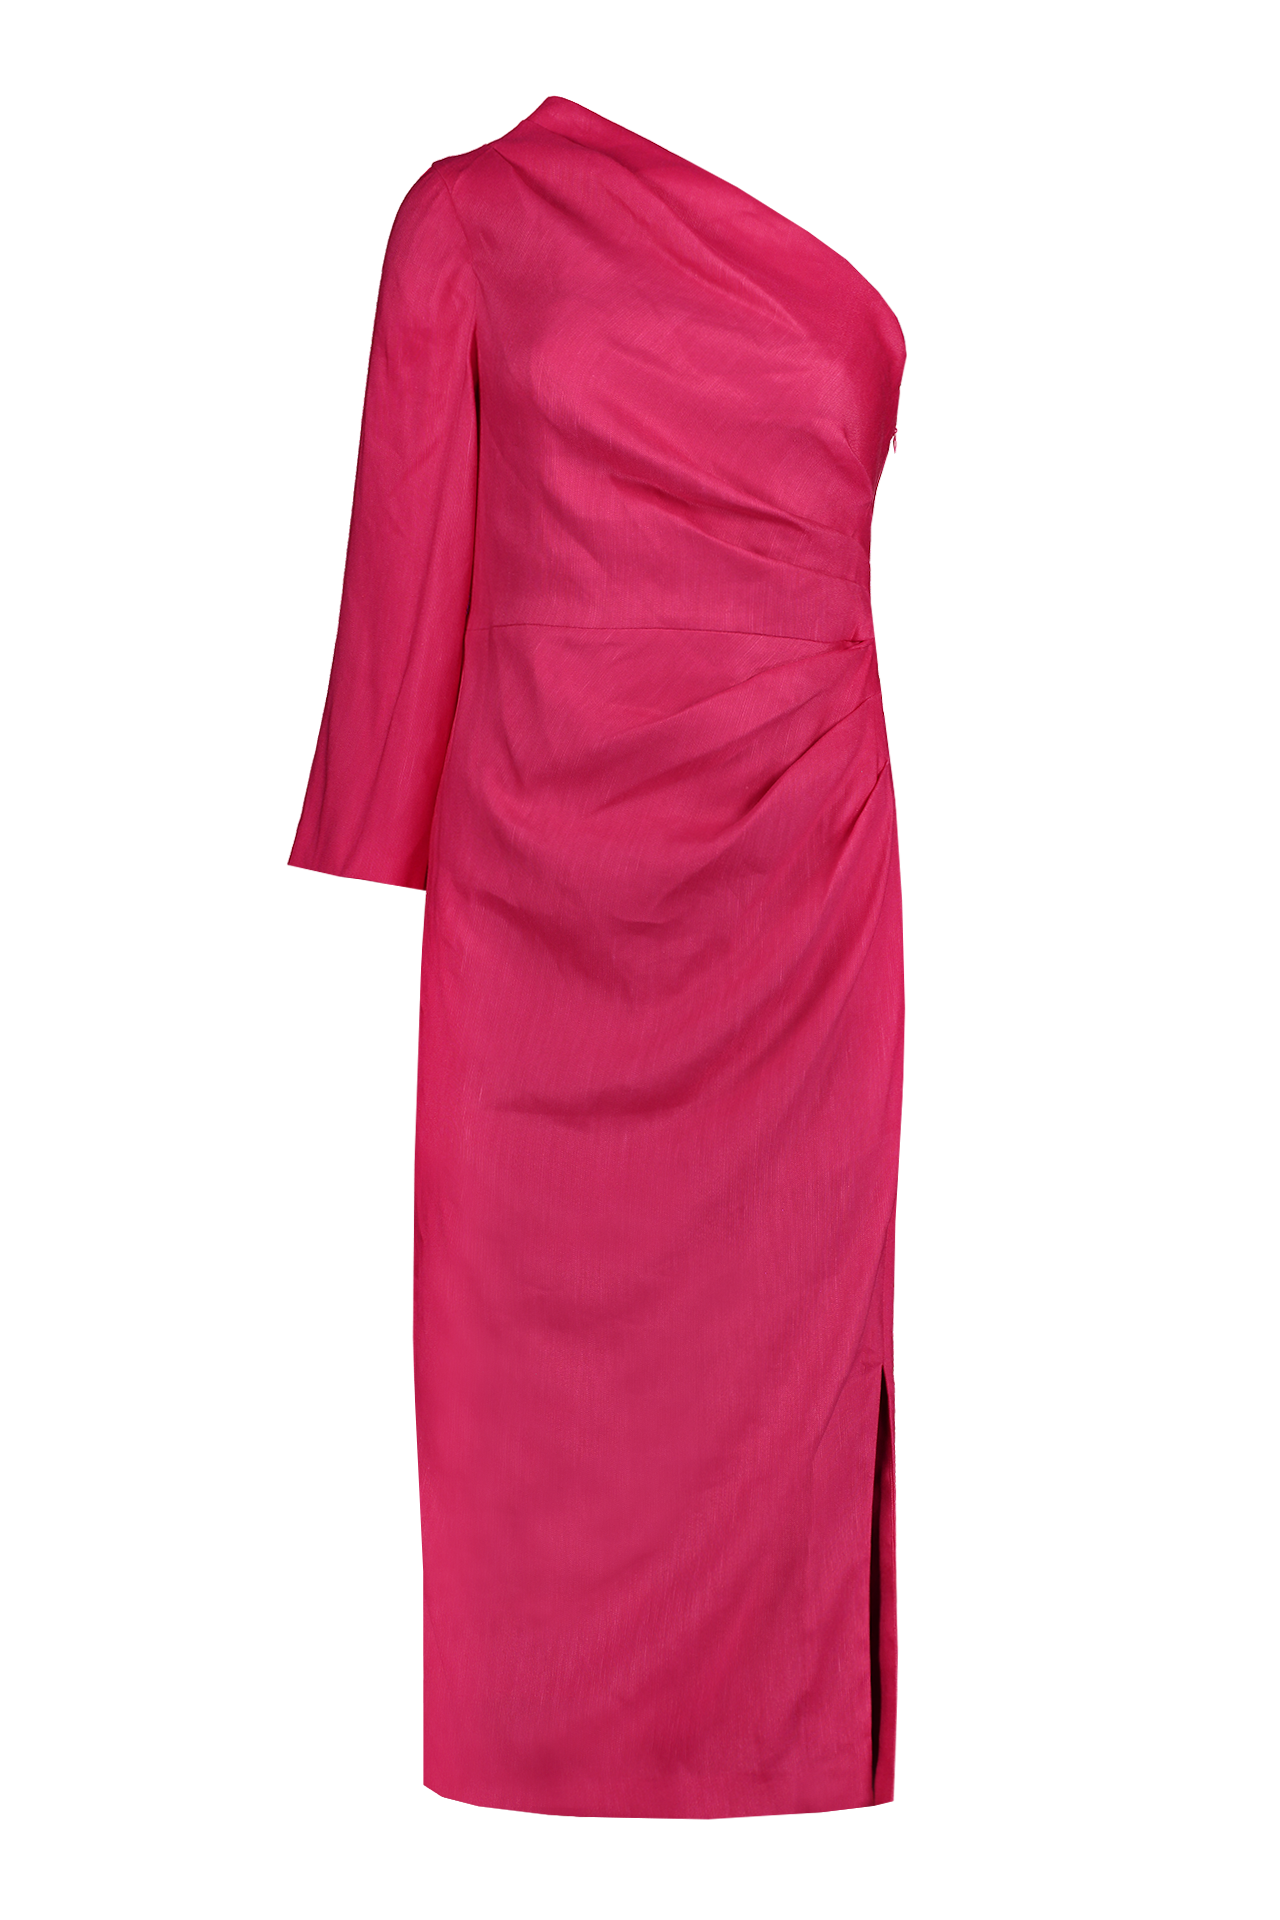 Veronica Beard Women's Patsy Dress | A.K. Rikk's